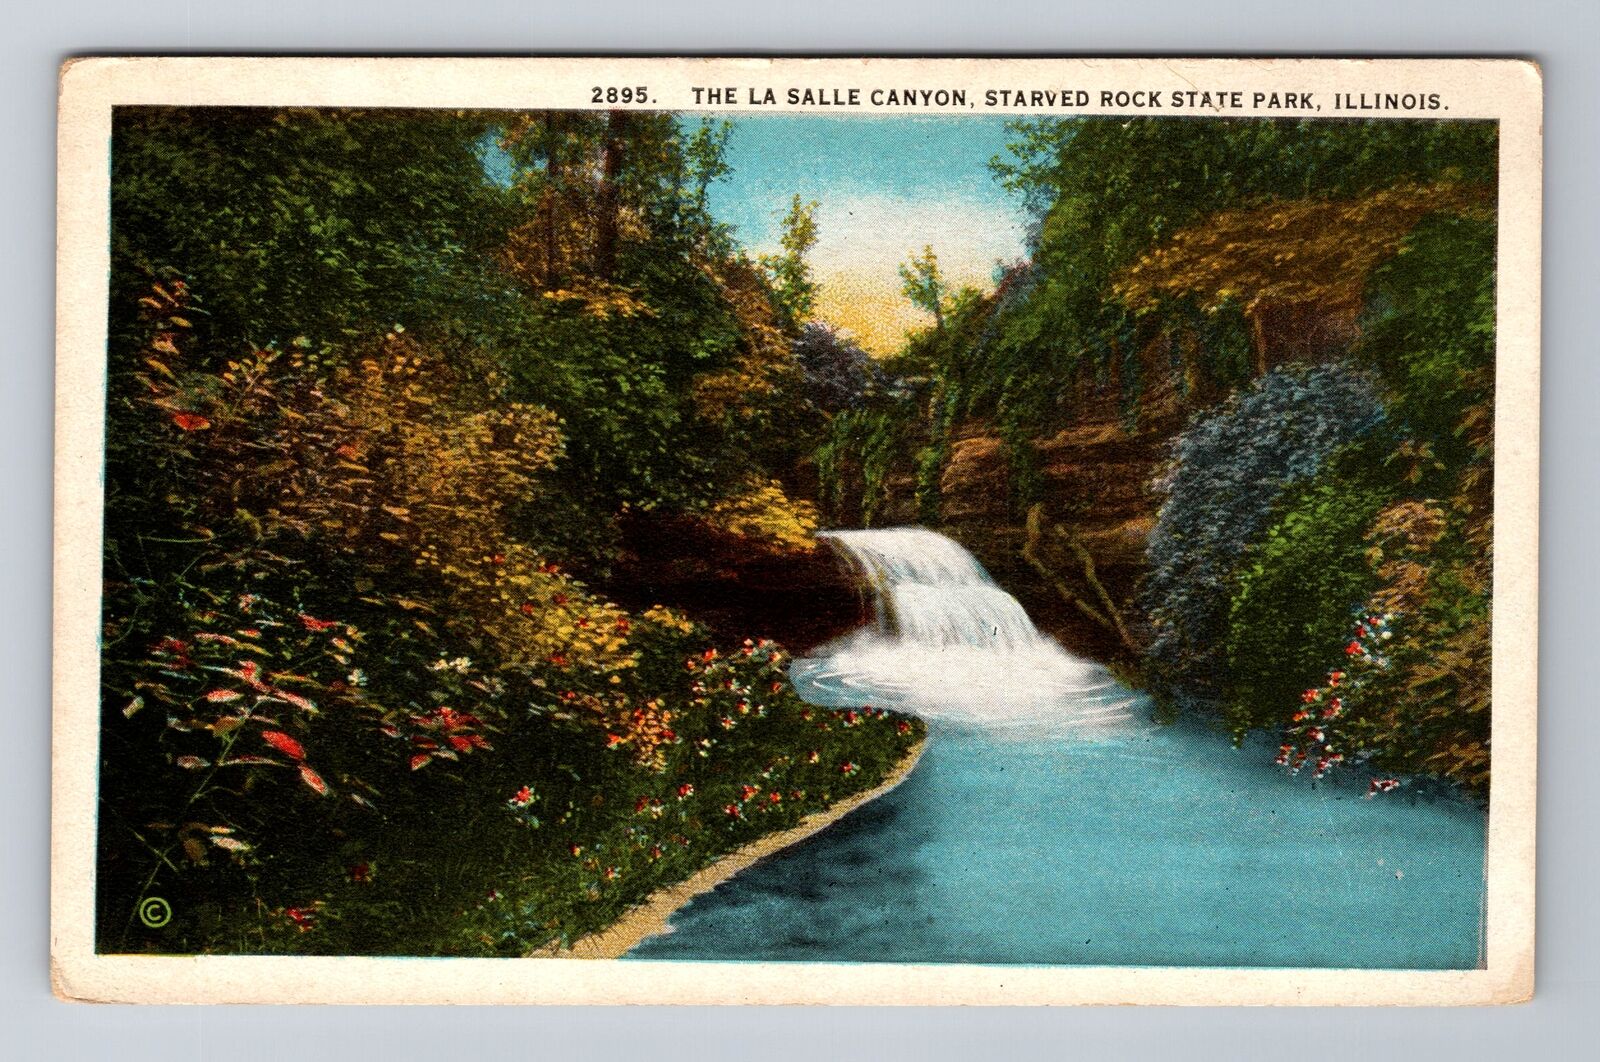 IL- Illinois, The La Salle Canyon, Antique, Vintage Souvenir Postcard